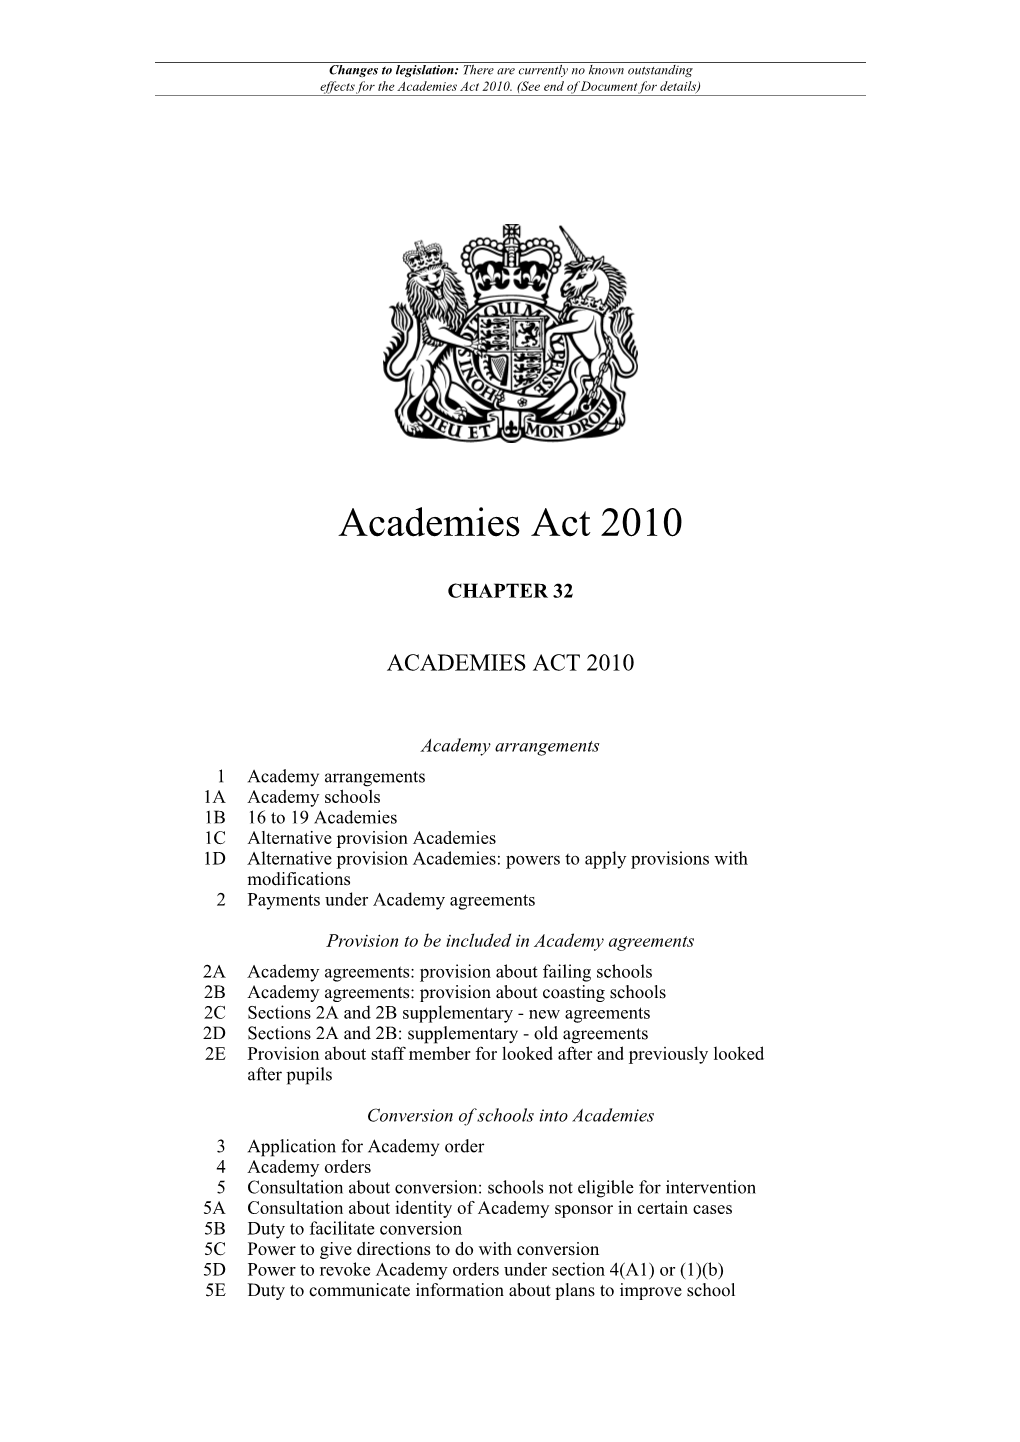 Academies Act 2010